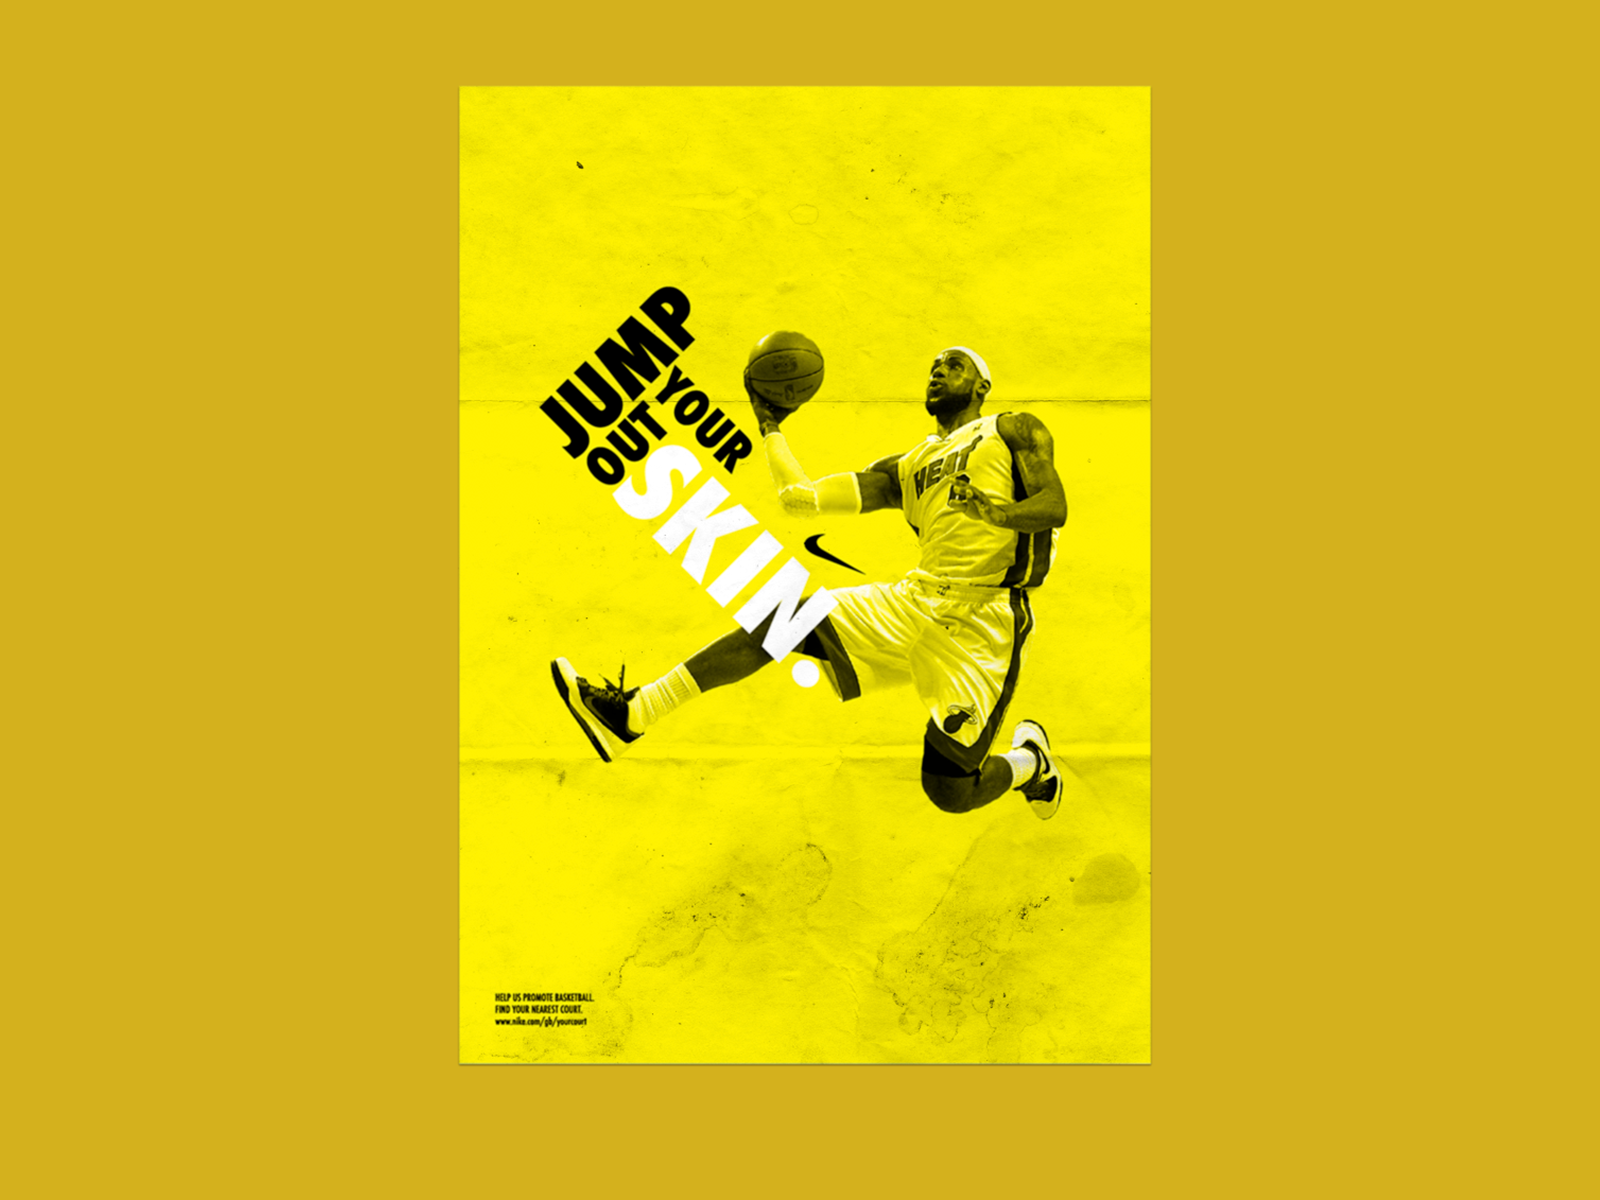 luz de sol diversión comestible Nike Basketball Poster by Liam Heath on Dribbble